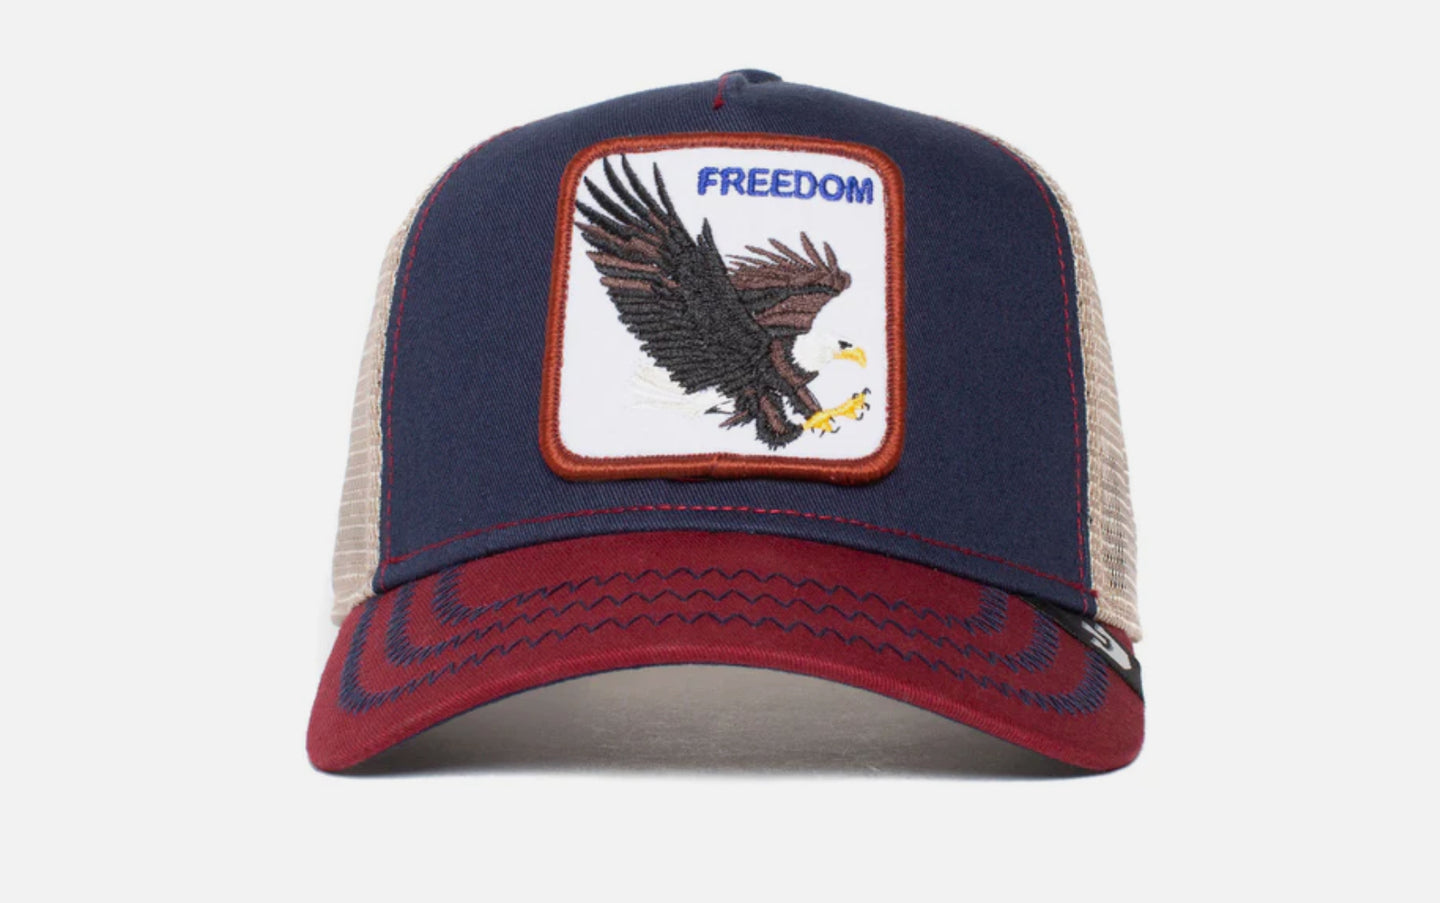 The Freedom Eagle